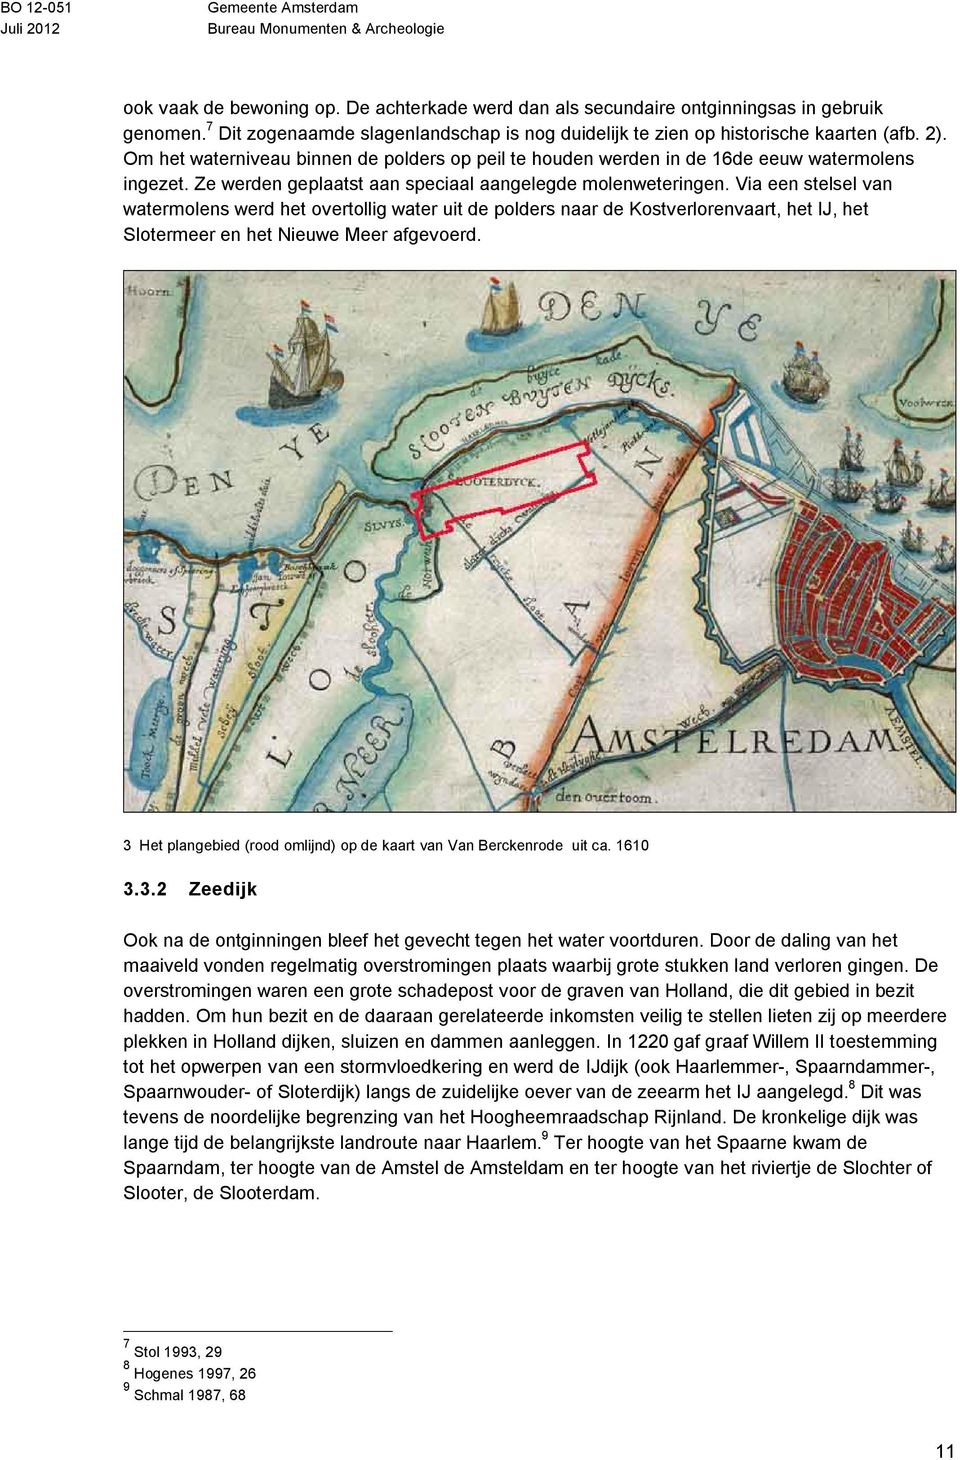 Via een stelsel van watermolens werd het overtollig water uit de polders naar de Kostverlorenvaart, het IJ, het Slotermeer en het Nieuwe Meer afgevoerd.